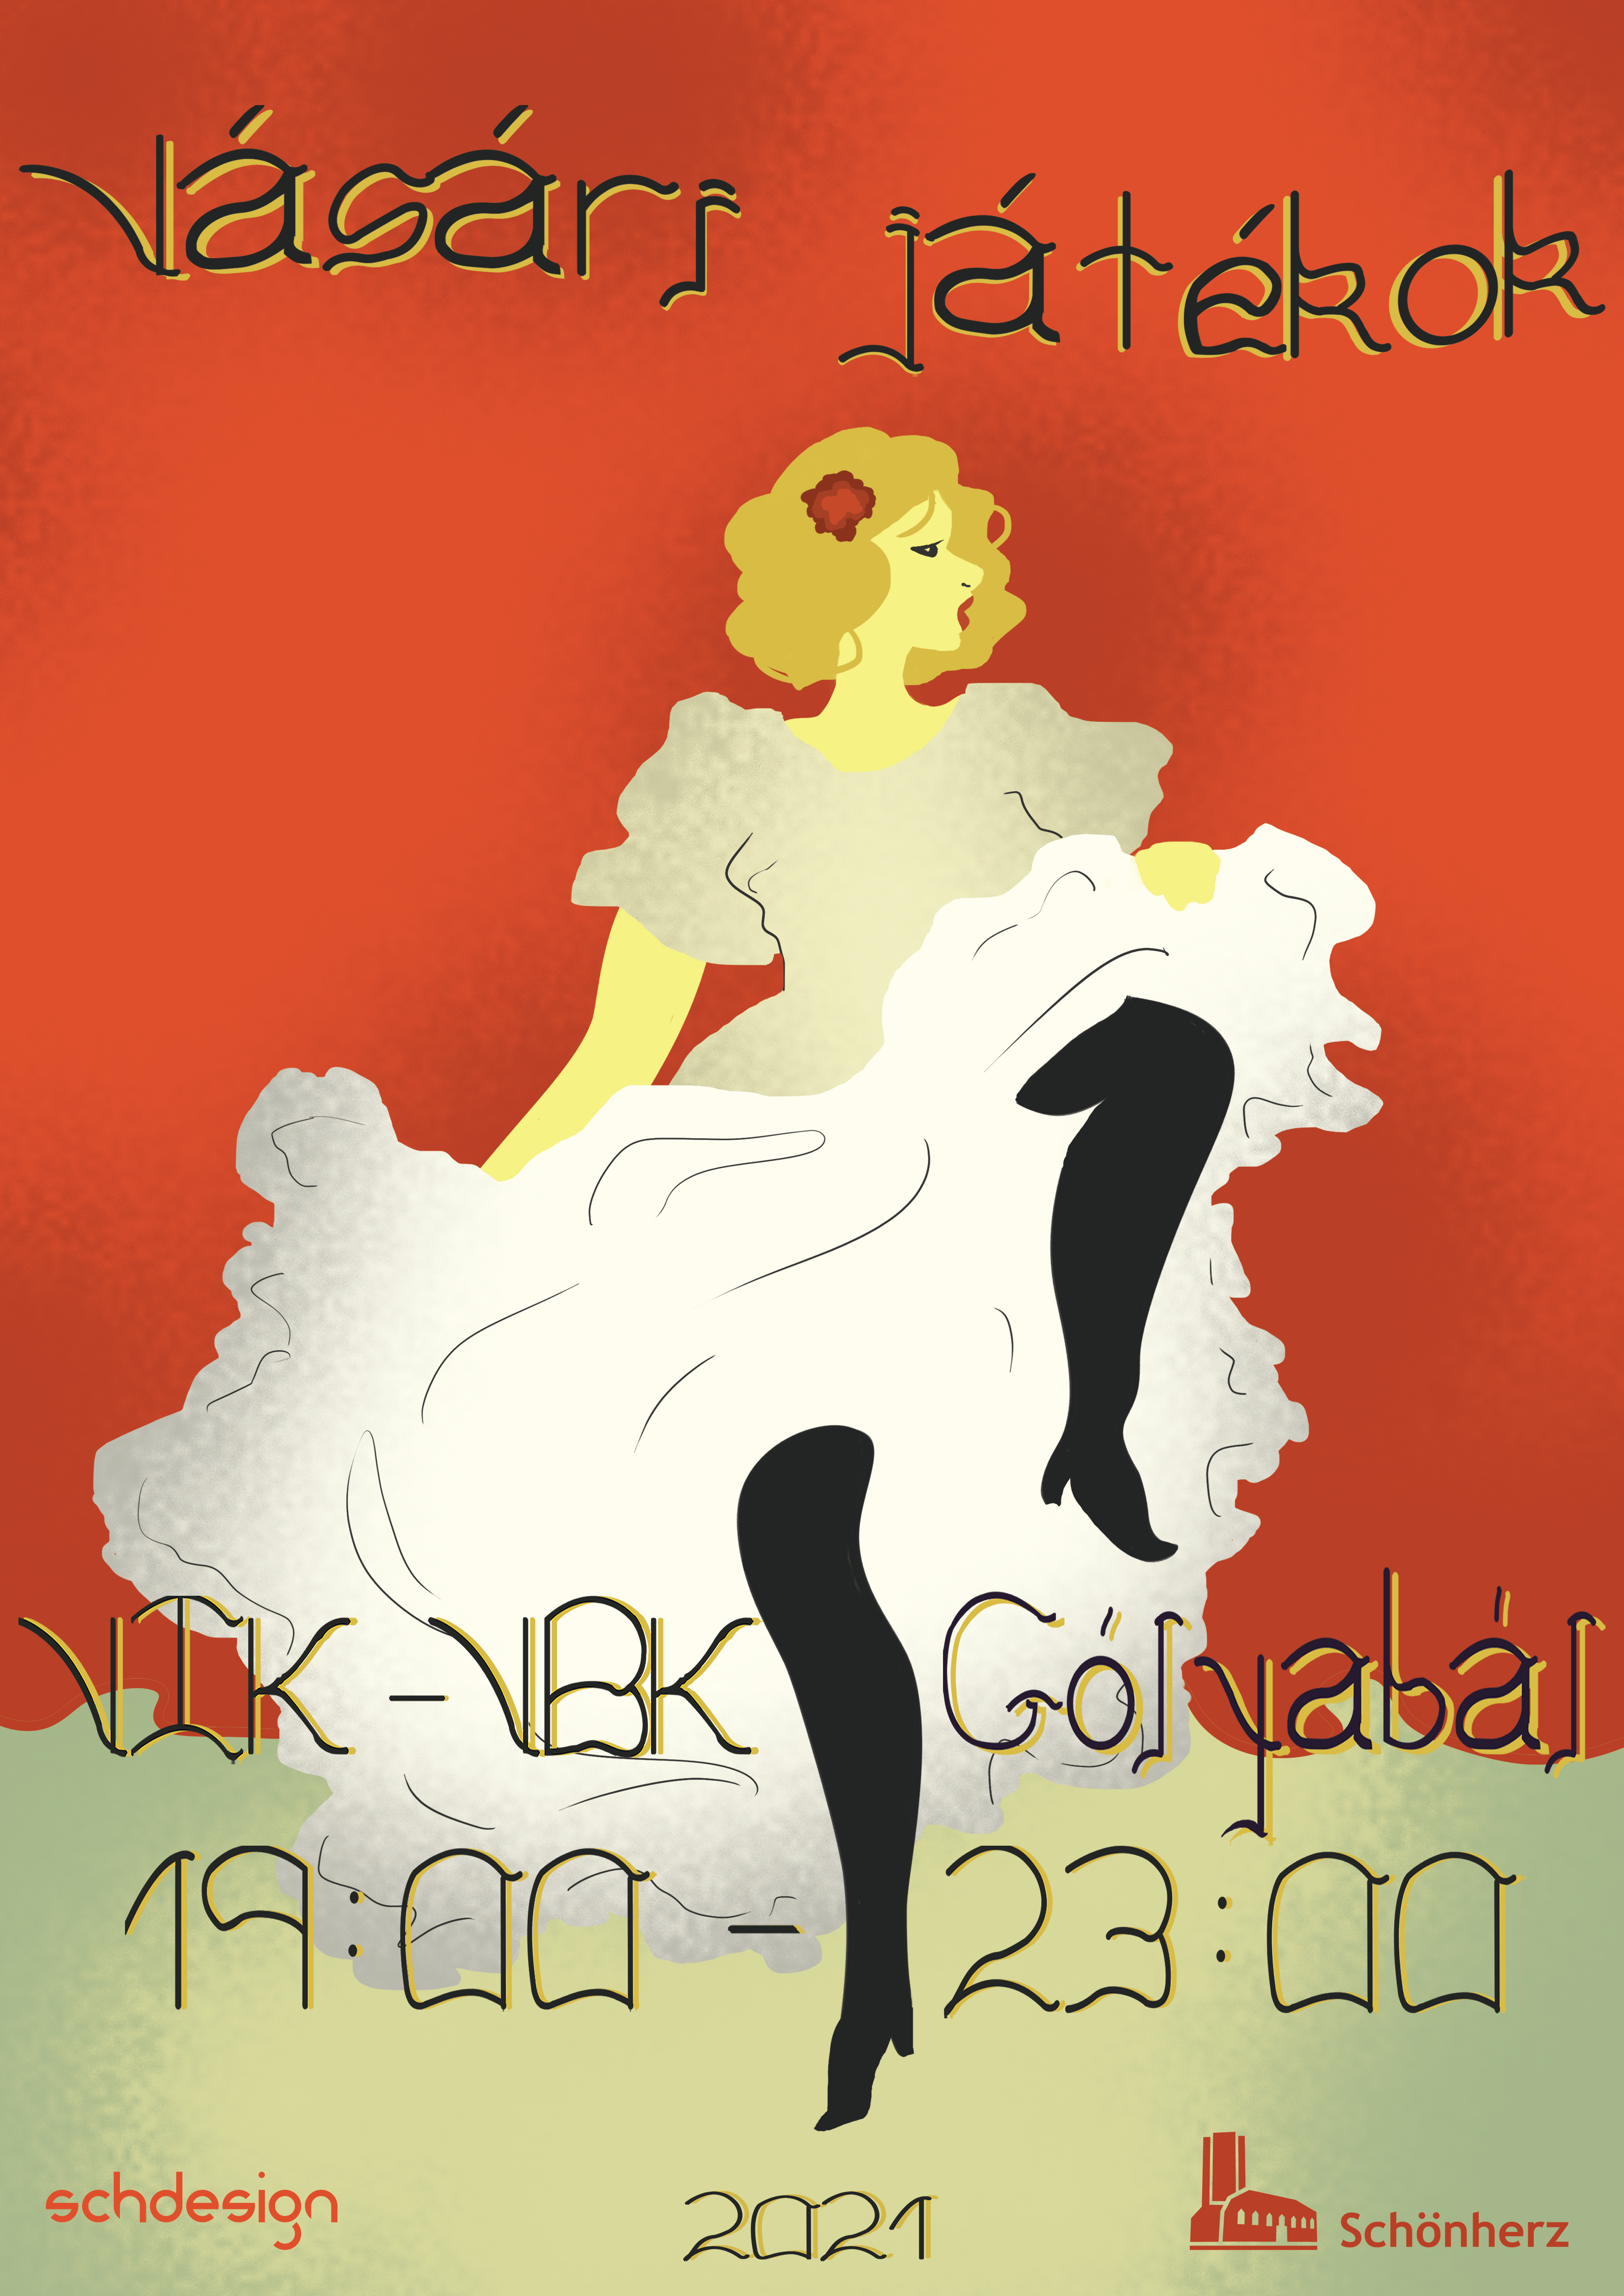 VIK-VBK Gólyabál plakát